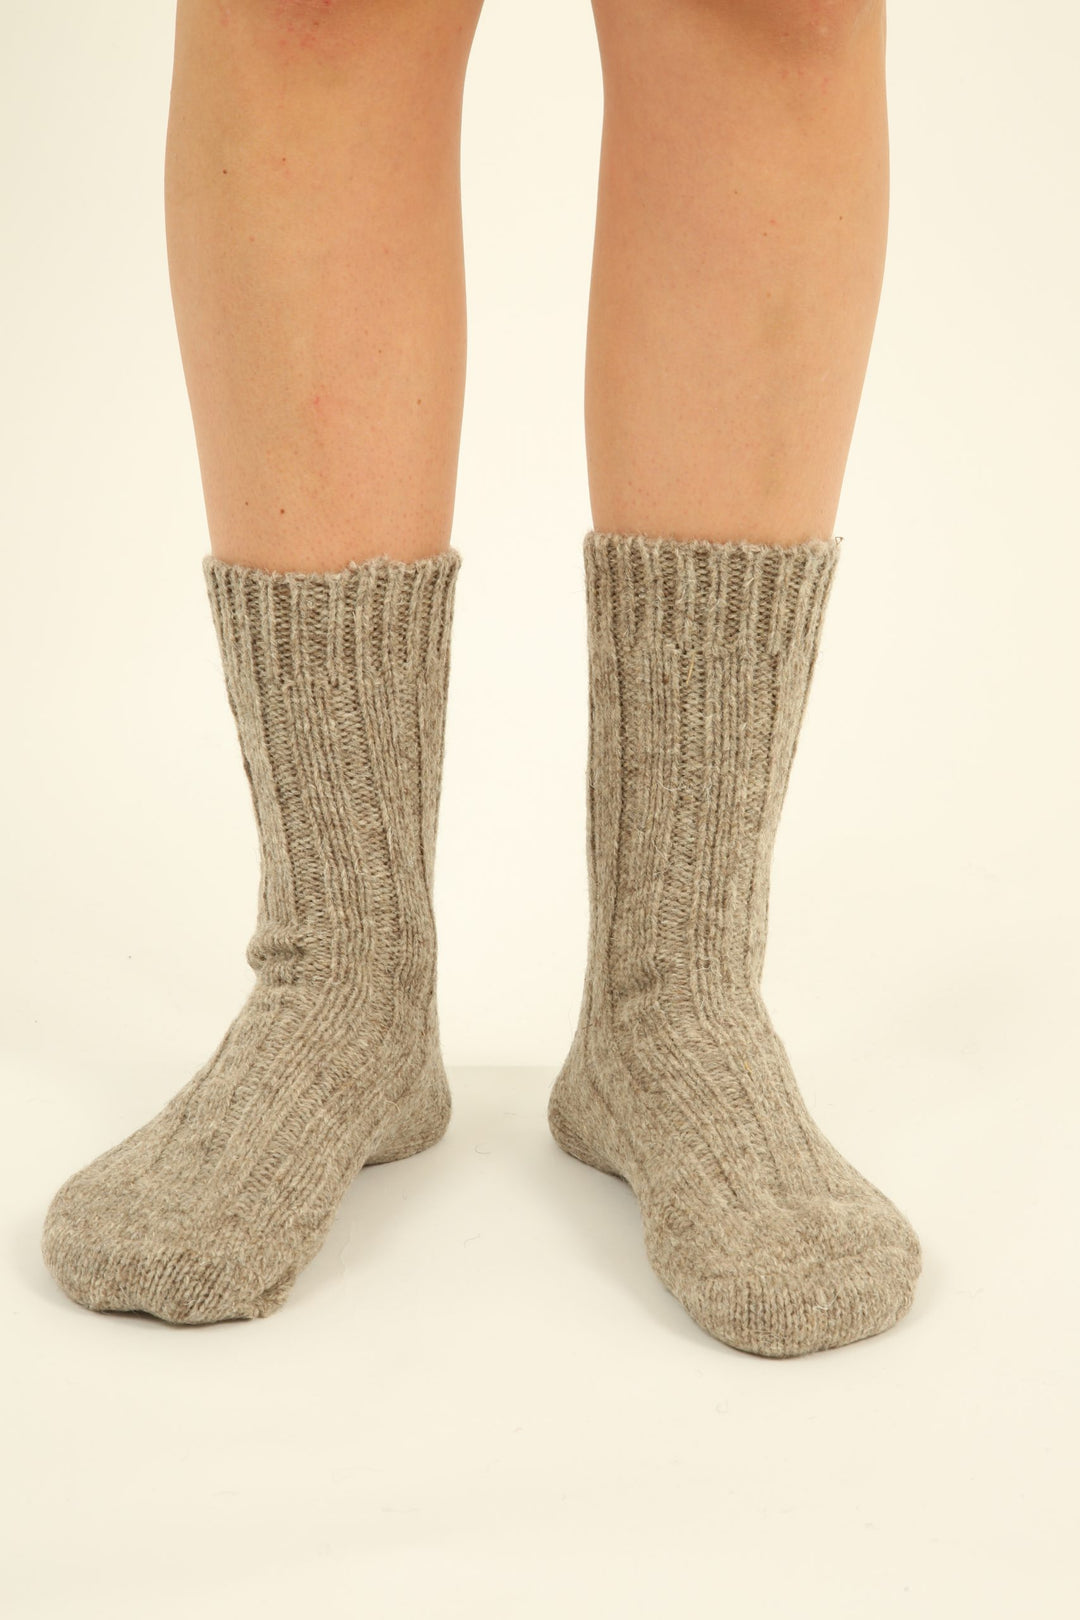 100% Virgin Wool Socks - light brown - made in Germany - 2 pair